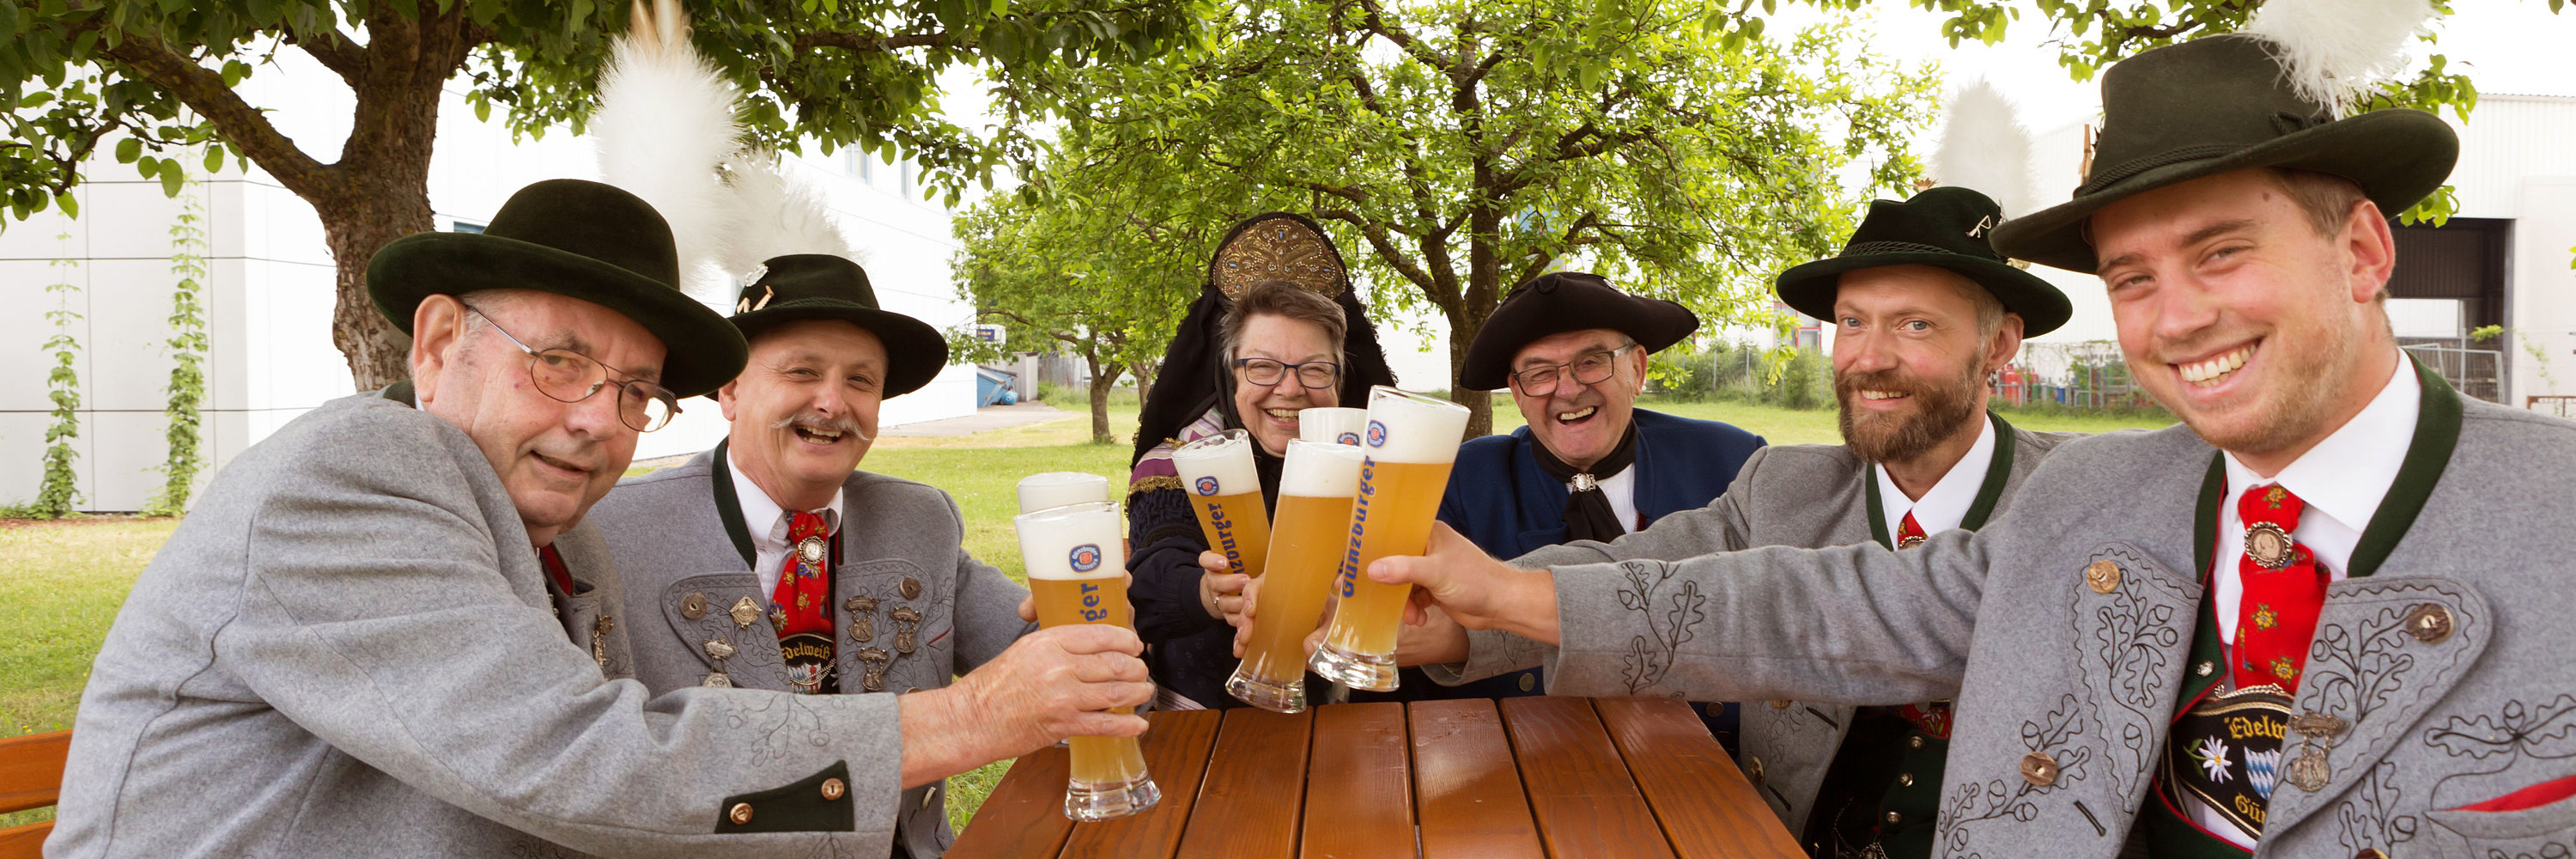 Essen & Trinken in Günzburg. Foto: Philipp Röger für die Stadt Günzburg